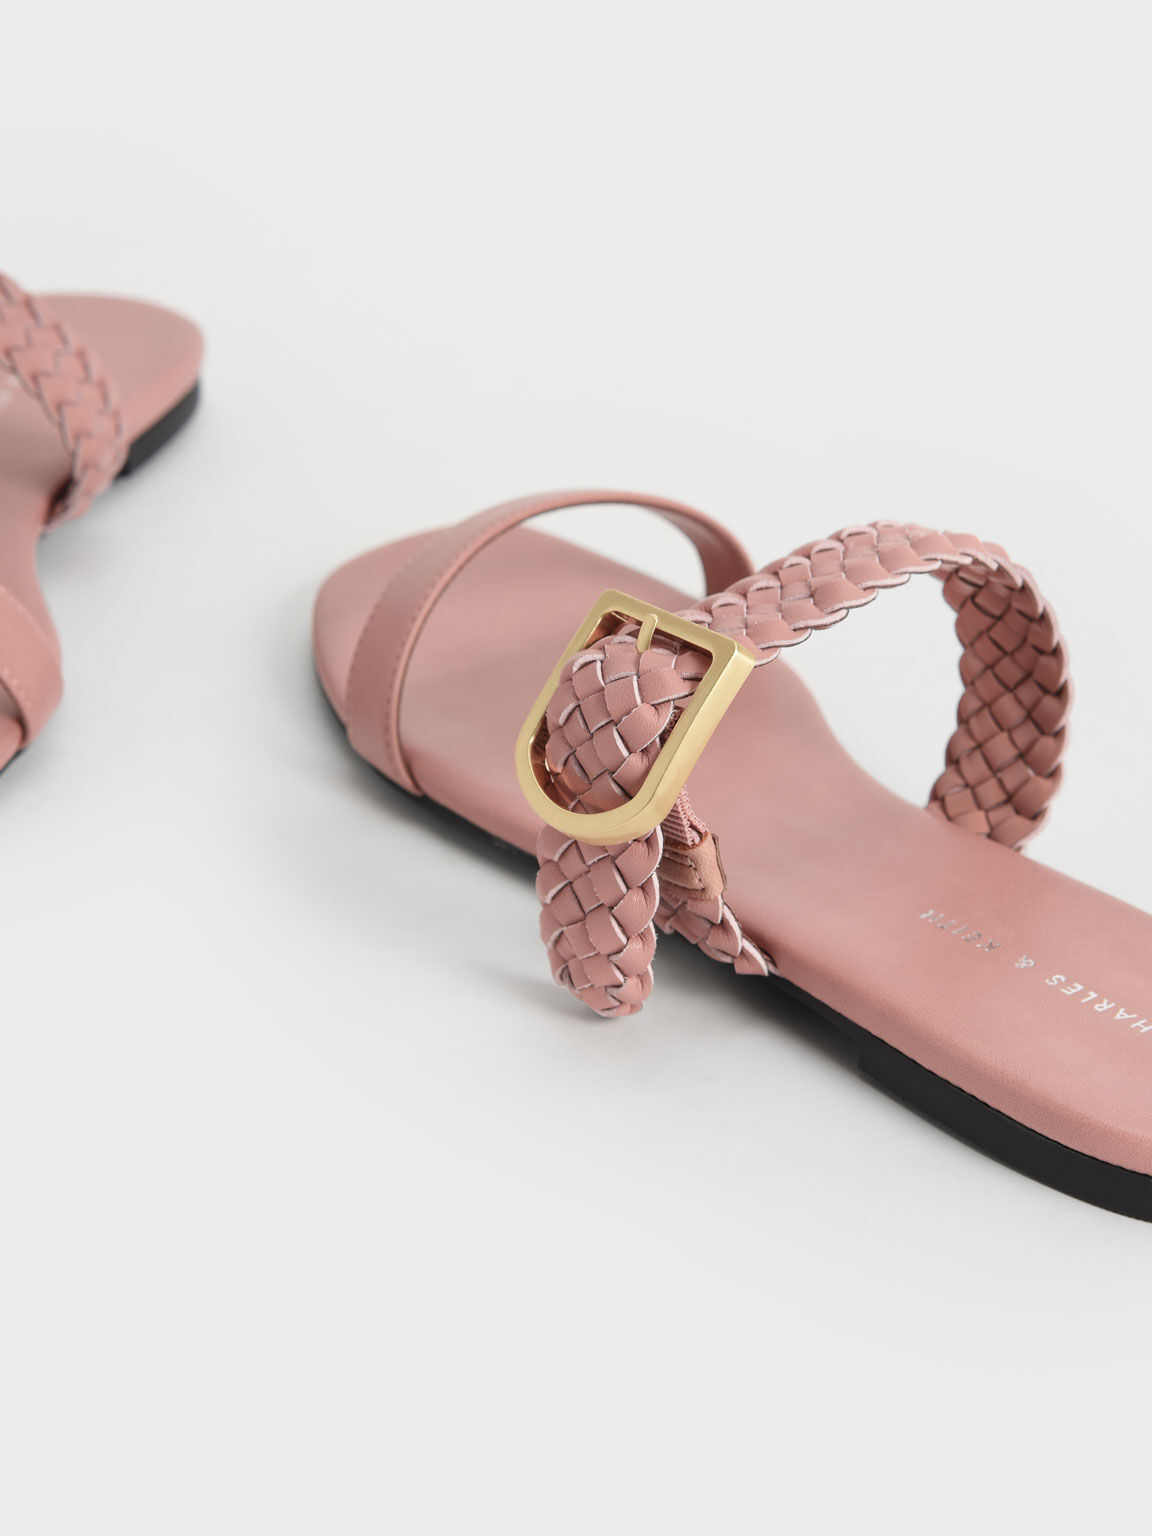 Sandal Woven Strap Slide, Pink, hi-res